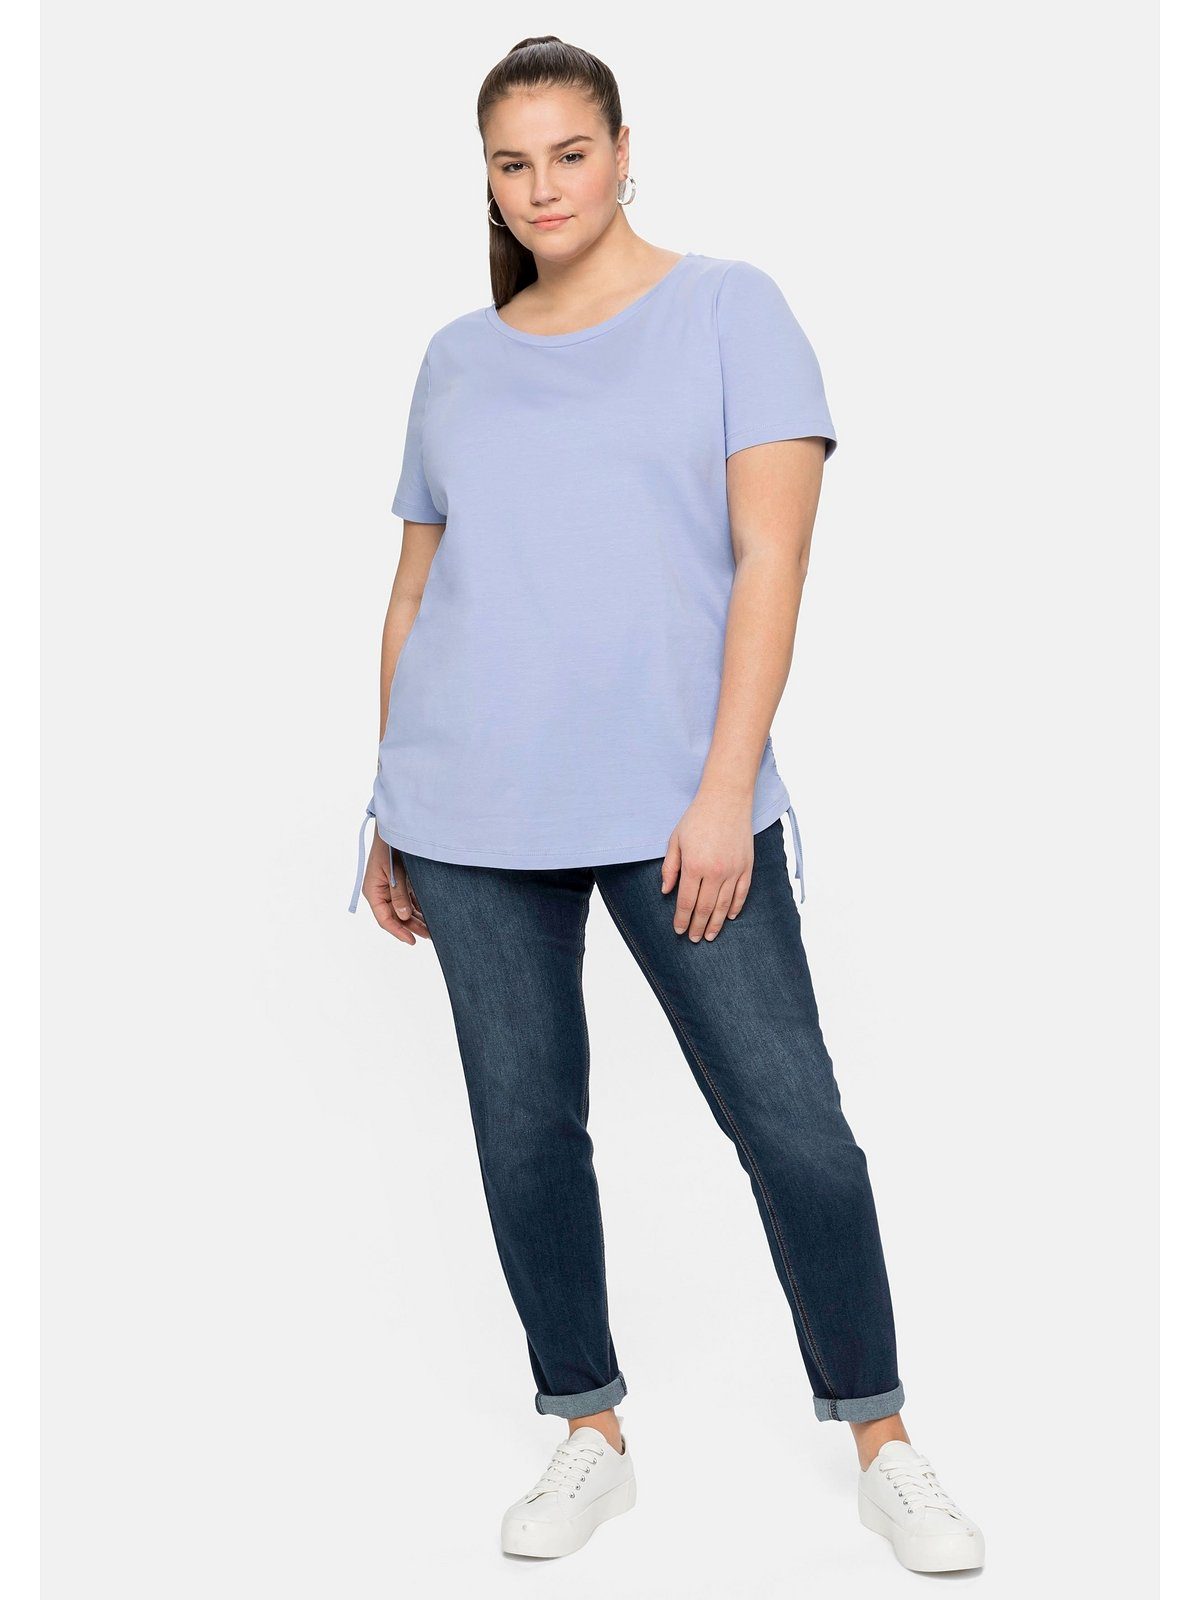 Sheego T-Shirt Große Größen seitlicher und mit mittelblau Bindeband Raffung